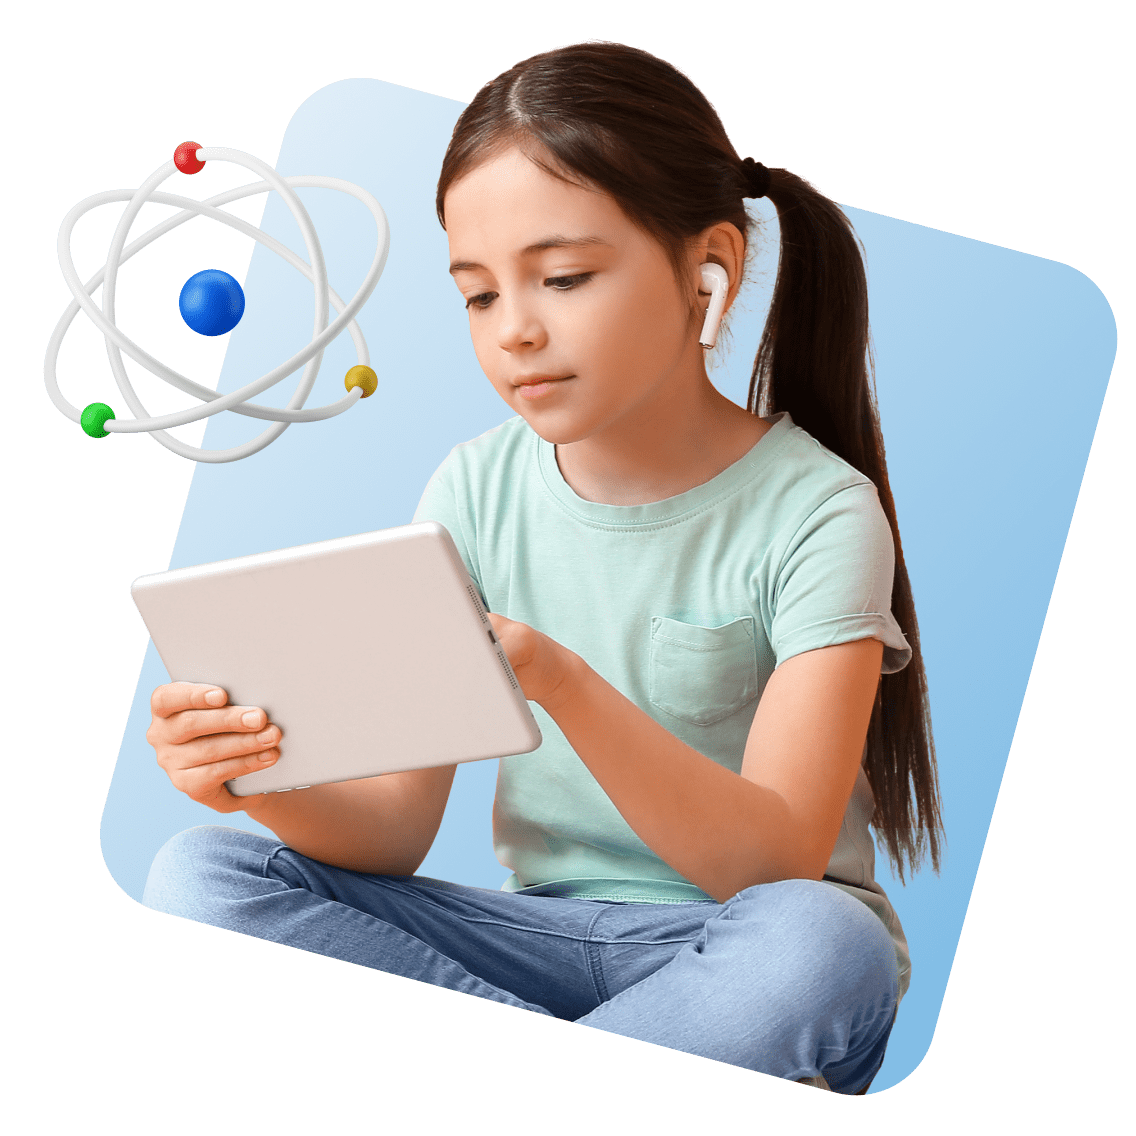 Imagen 1 de las escuelas en línea de California (nombre 3 Young Girl Tablet Airpods Science 3)